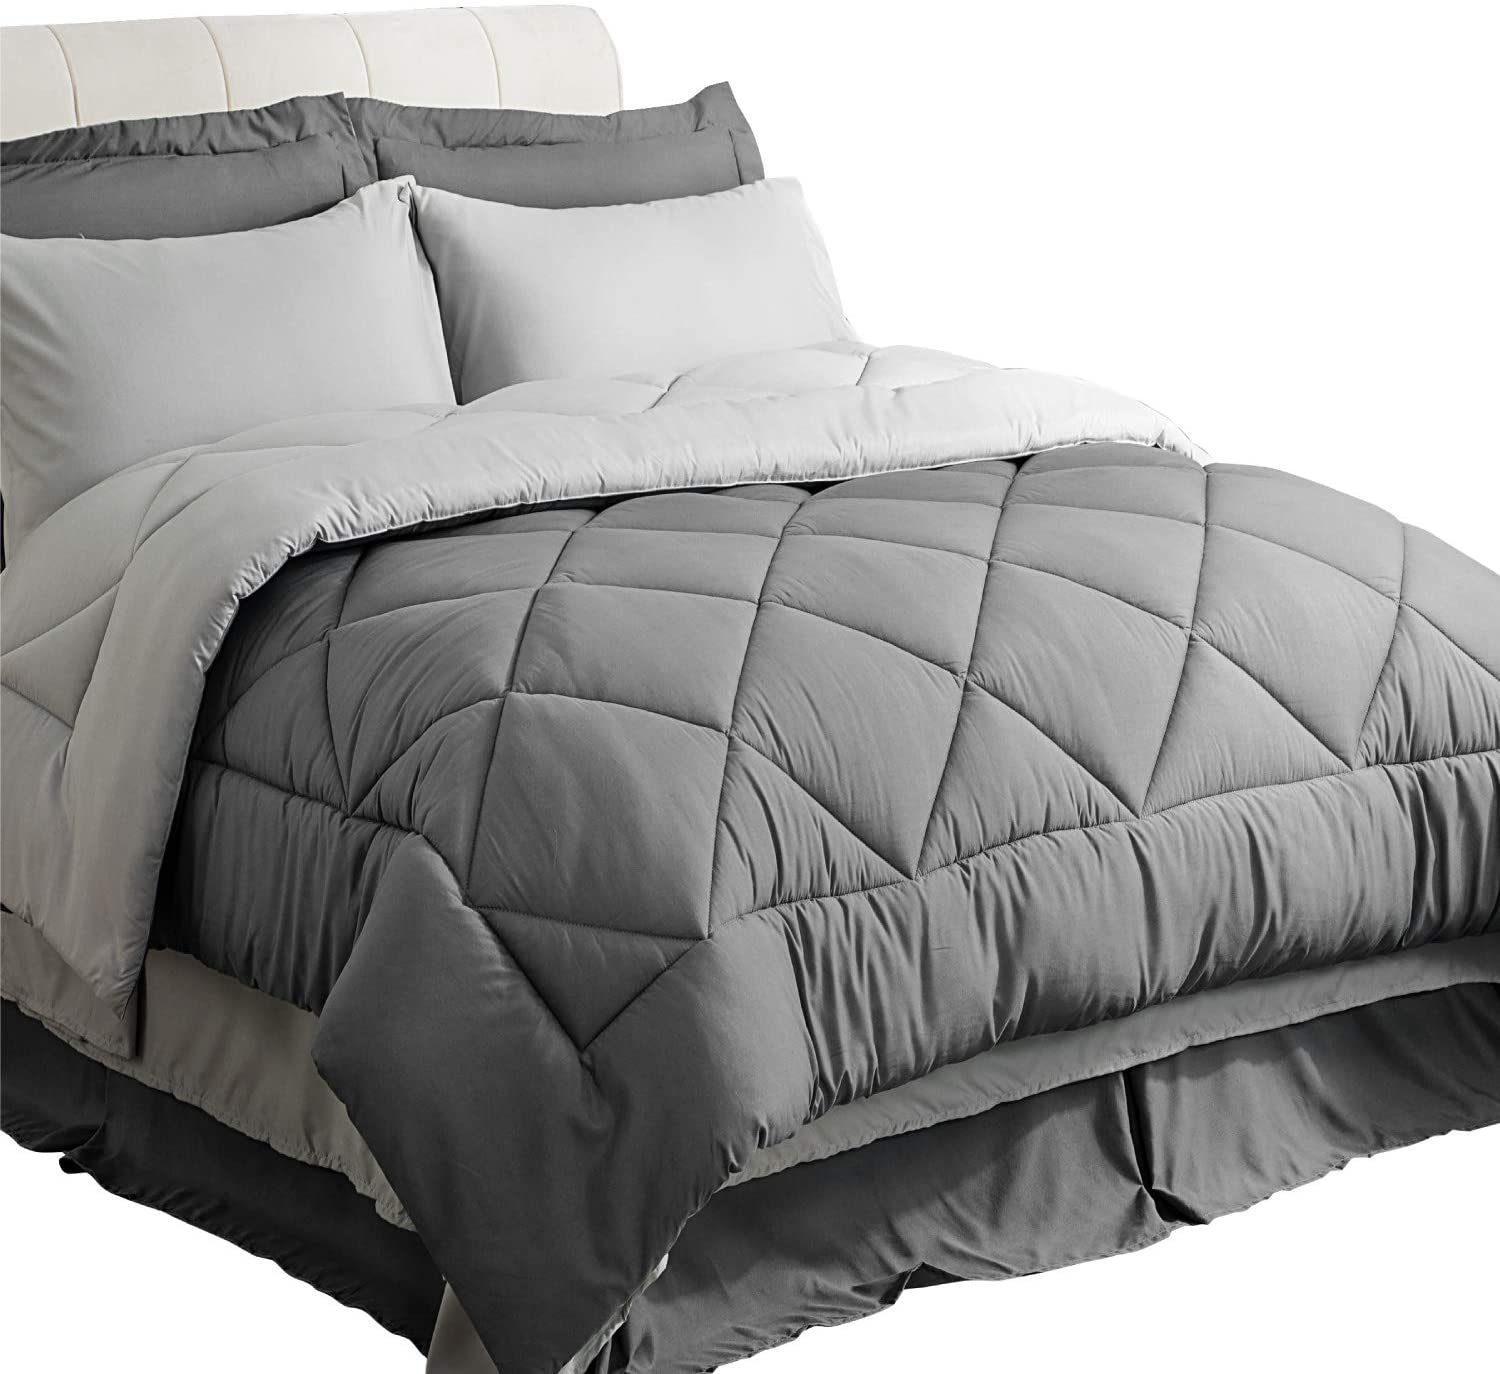 Bedsure Fluffy Down Alternative Twin Comforter Set, 6-Piece